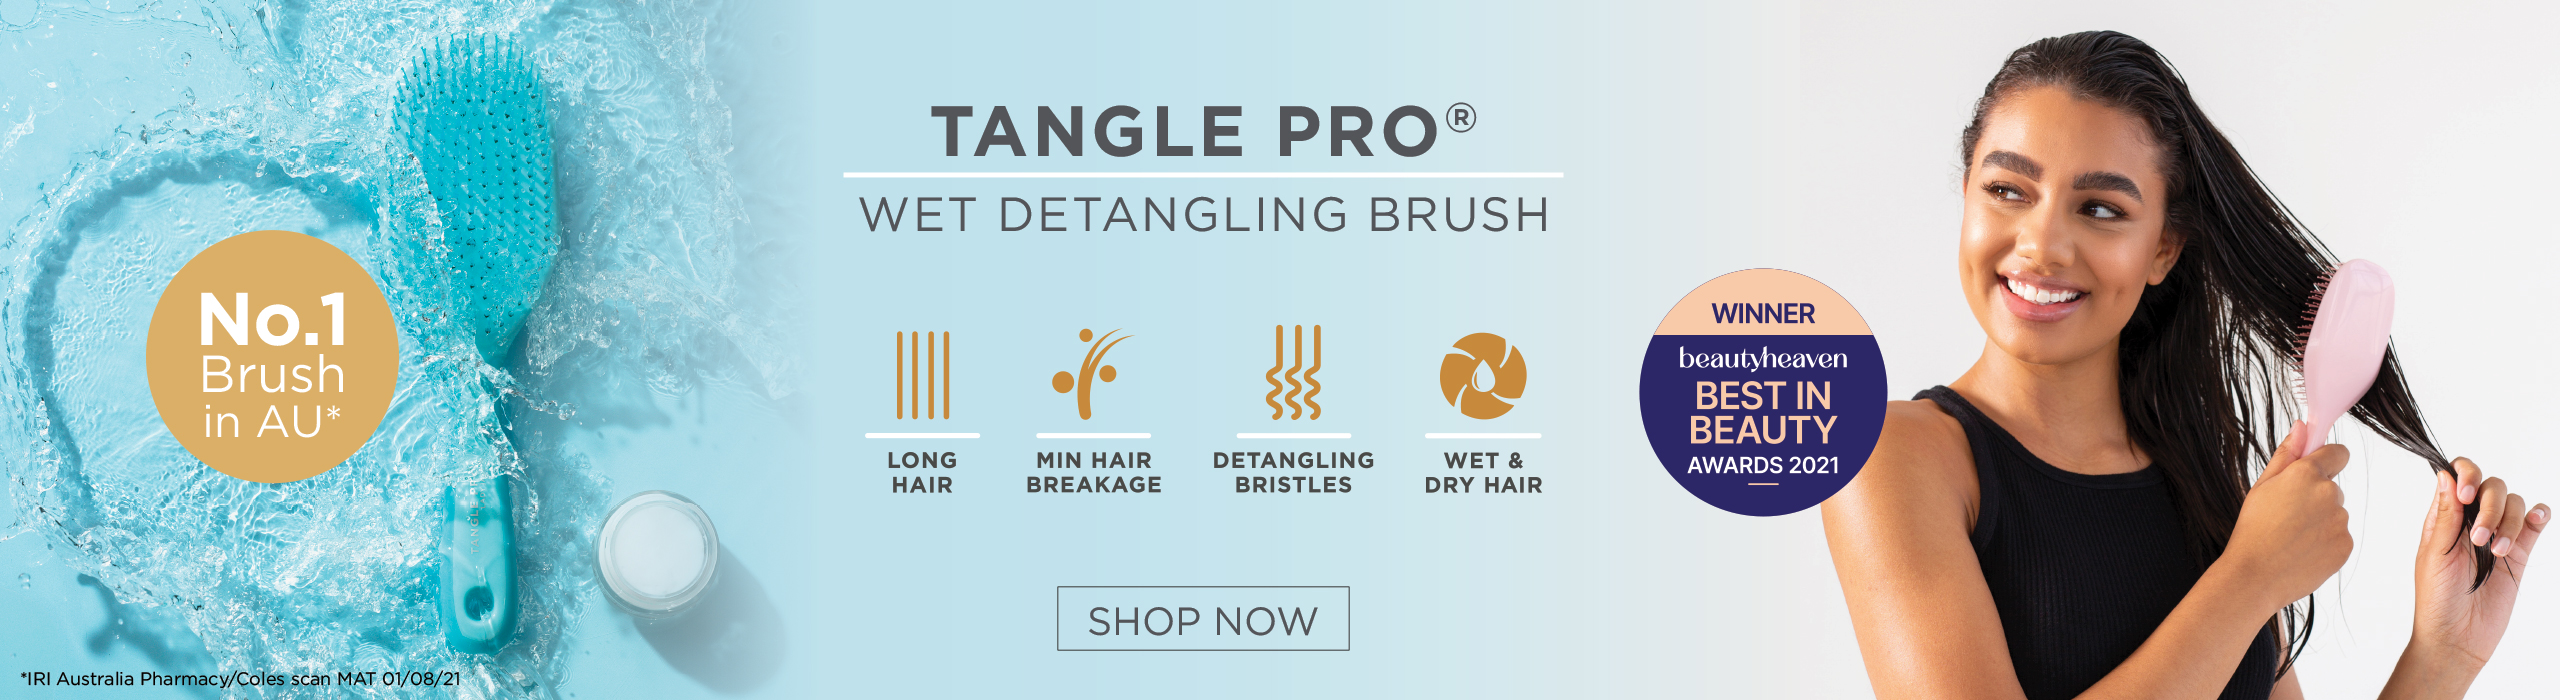 Shop the TanglePro Wet Detangling Brush